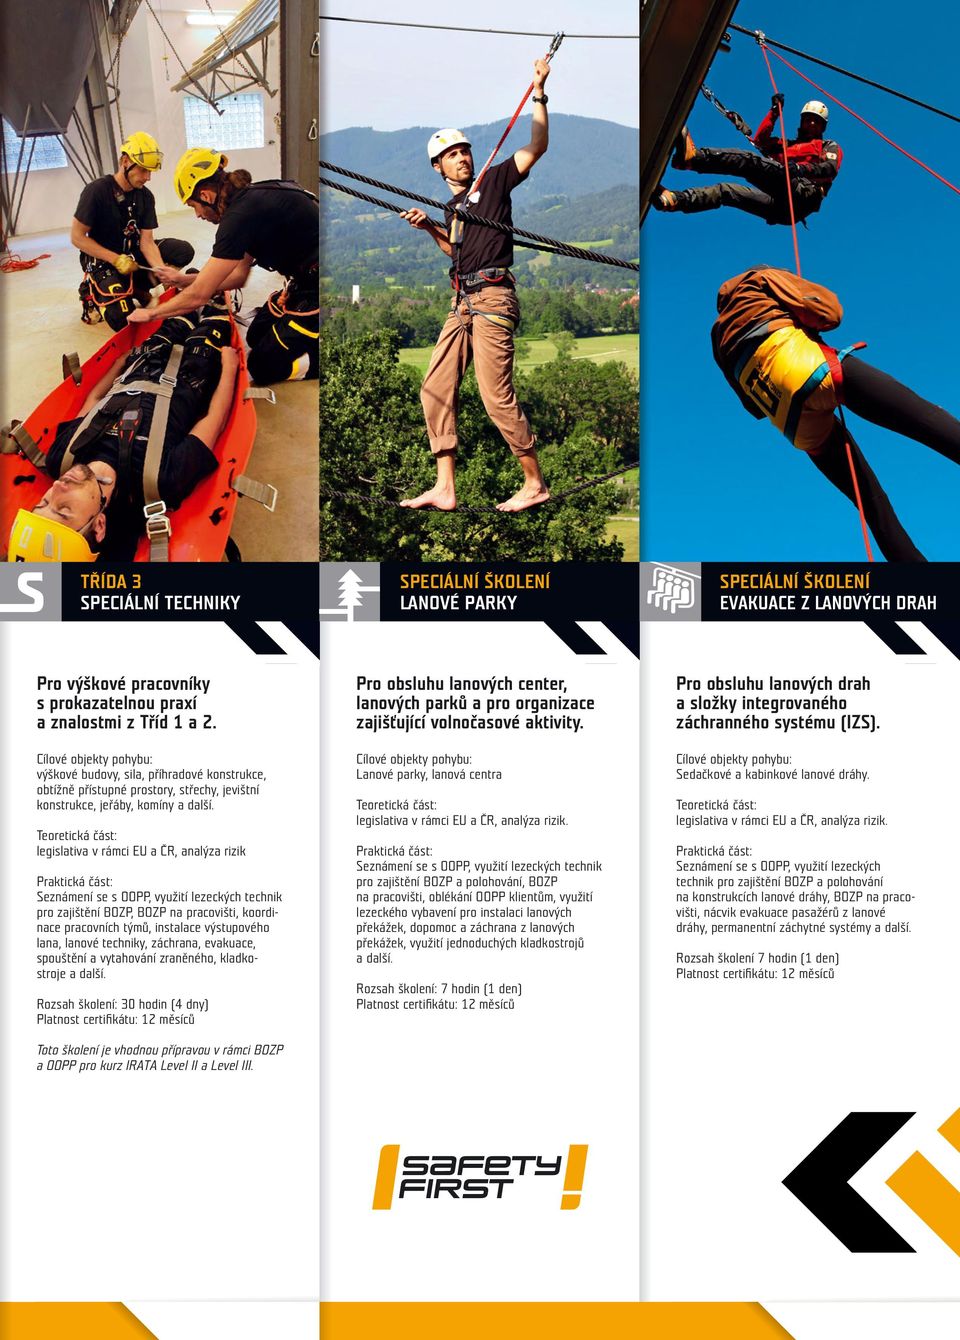 legislativa v rámci EU a ČR, analýza rizik Seznámení se s OOPP, využití lezeckých technik pro zajištění BOZP, BOZP na pracovišti, koordinace pracovních týmů, instalace výstupového lana, lanové